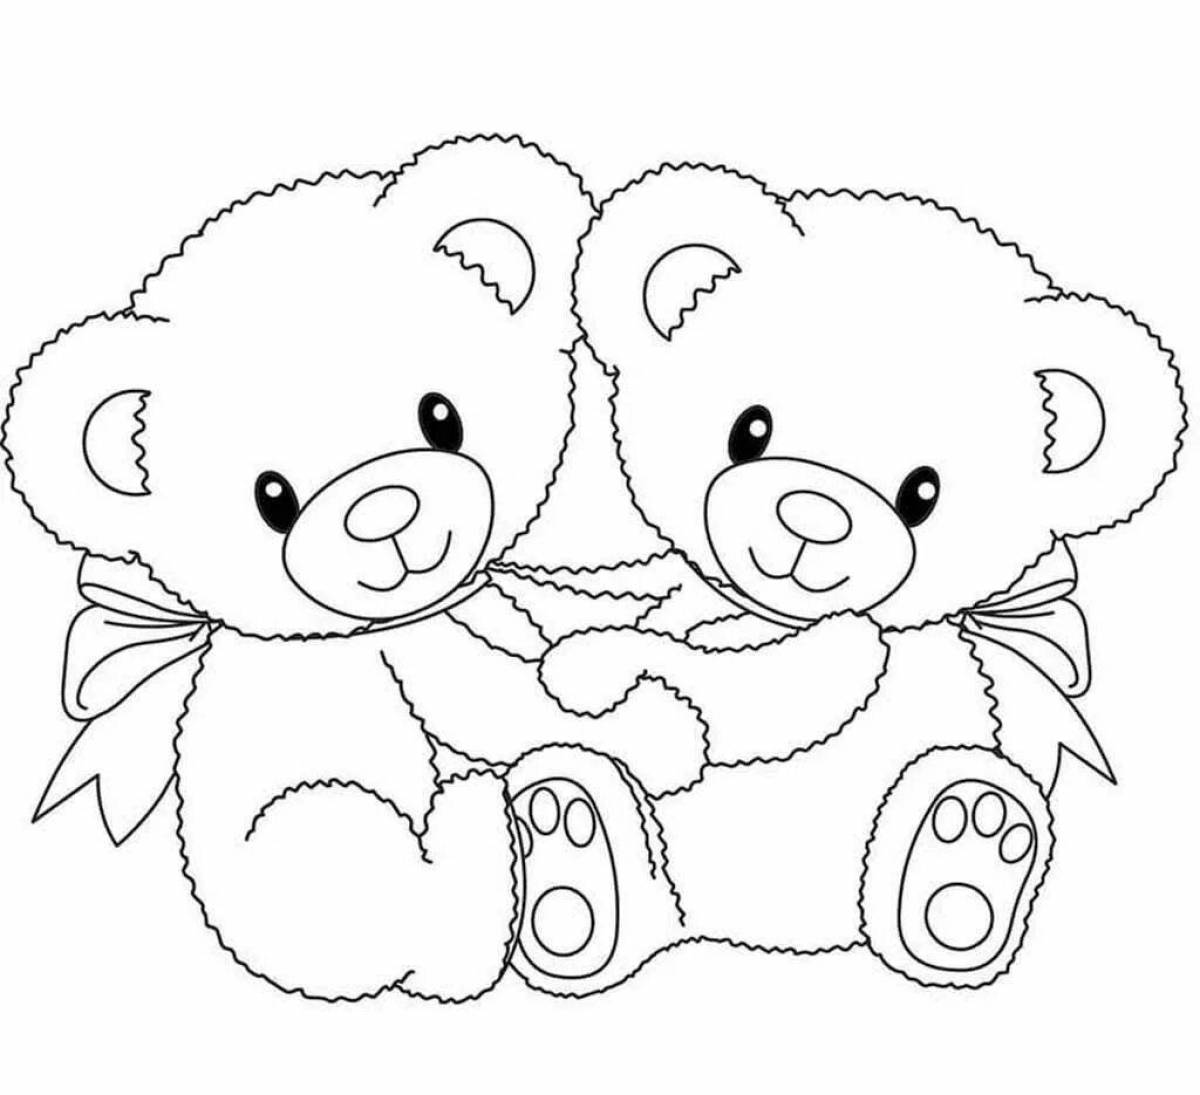 Медведи раскраска для детей - распечатать картинки а4 бесплатно